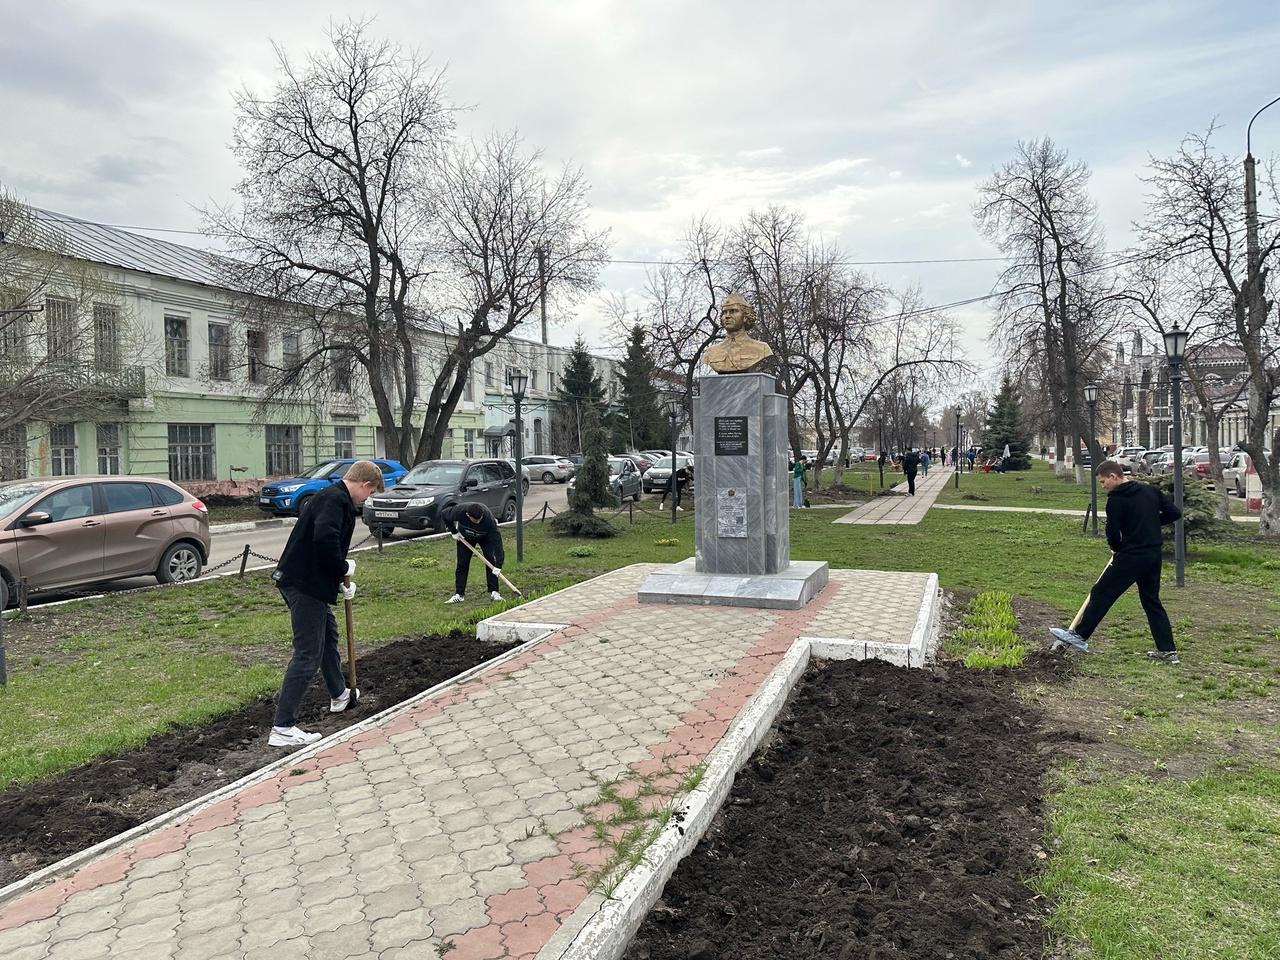 Во Всероссийский день заботы о памятниках истории и культуры в Димитровграде прошла тематическая акция.